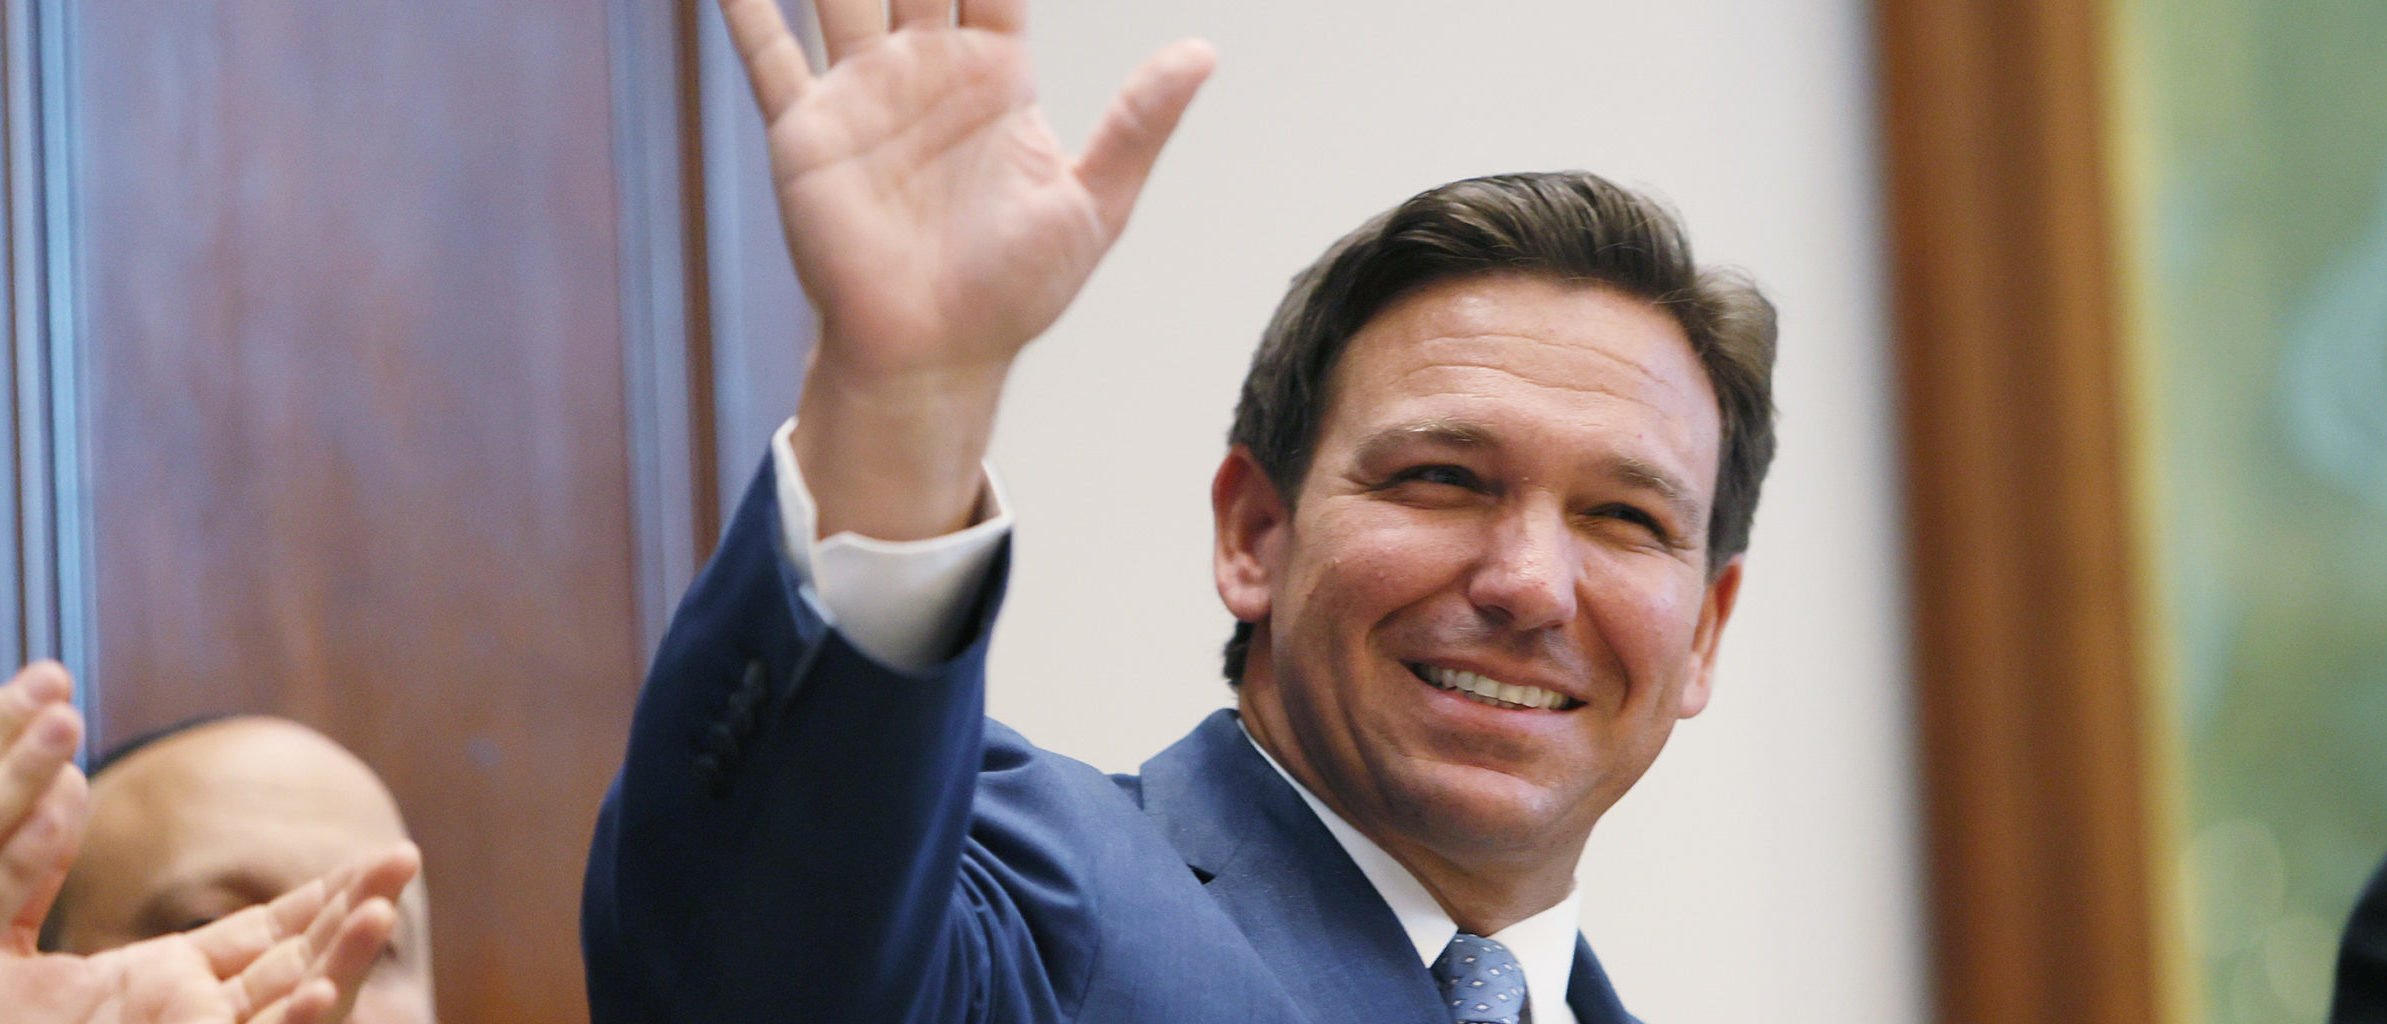 New Poll Projects Landslide Re-Election Victory For Florida Gov. DeSantis